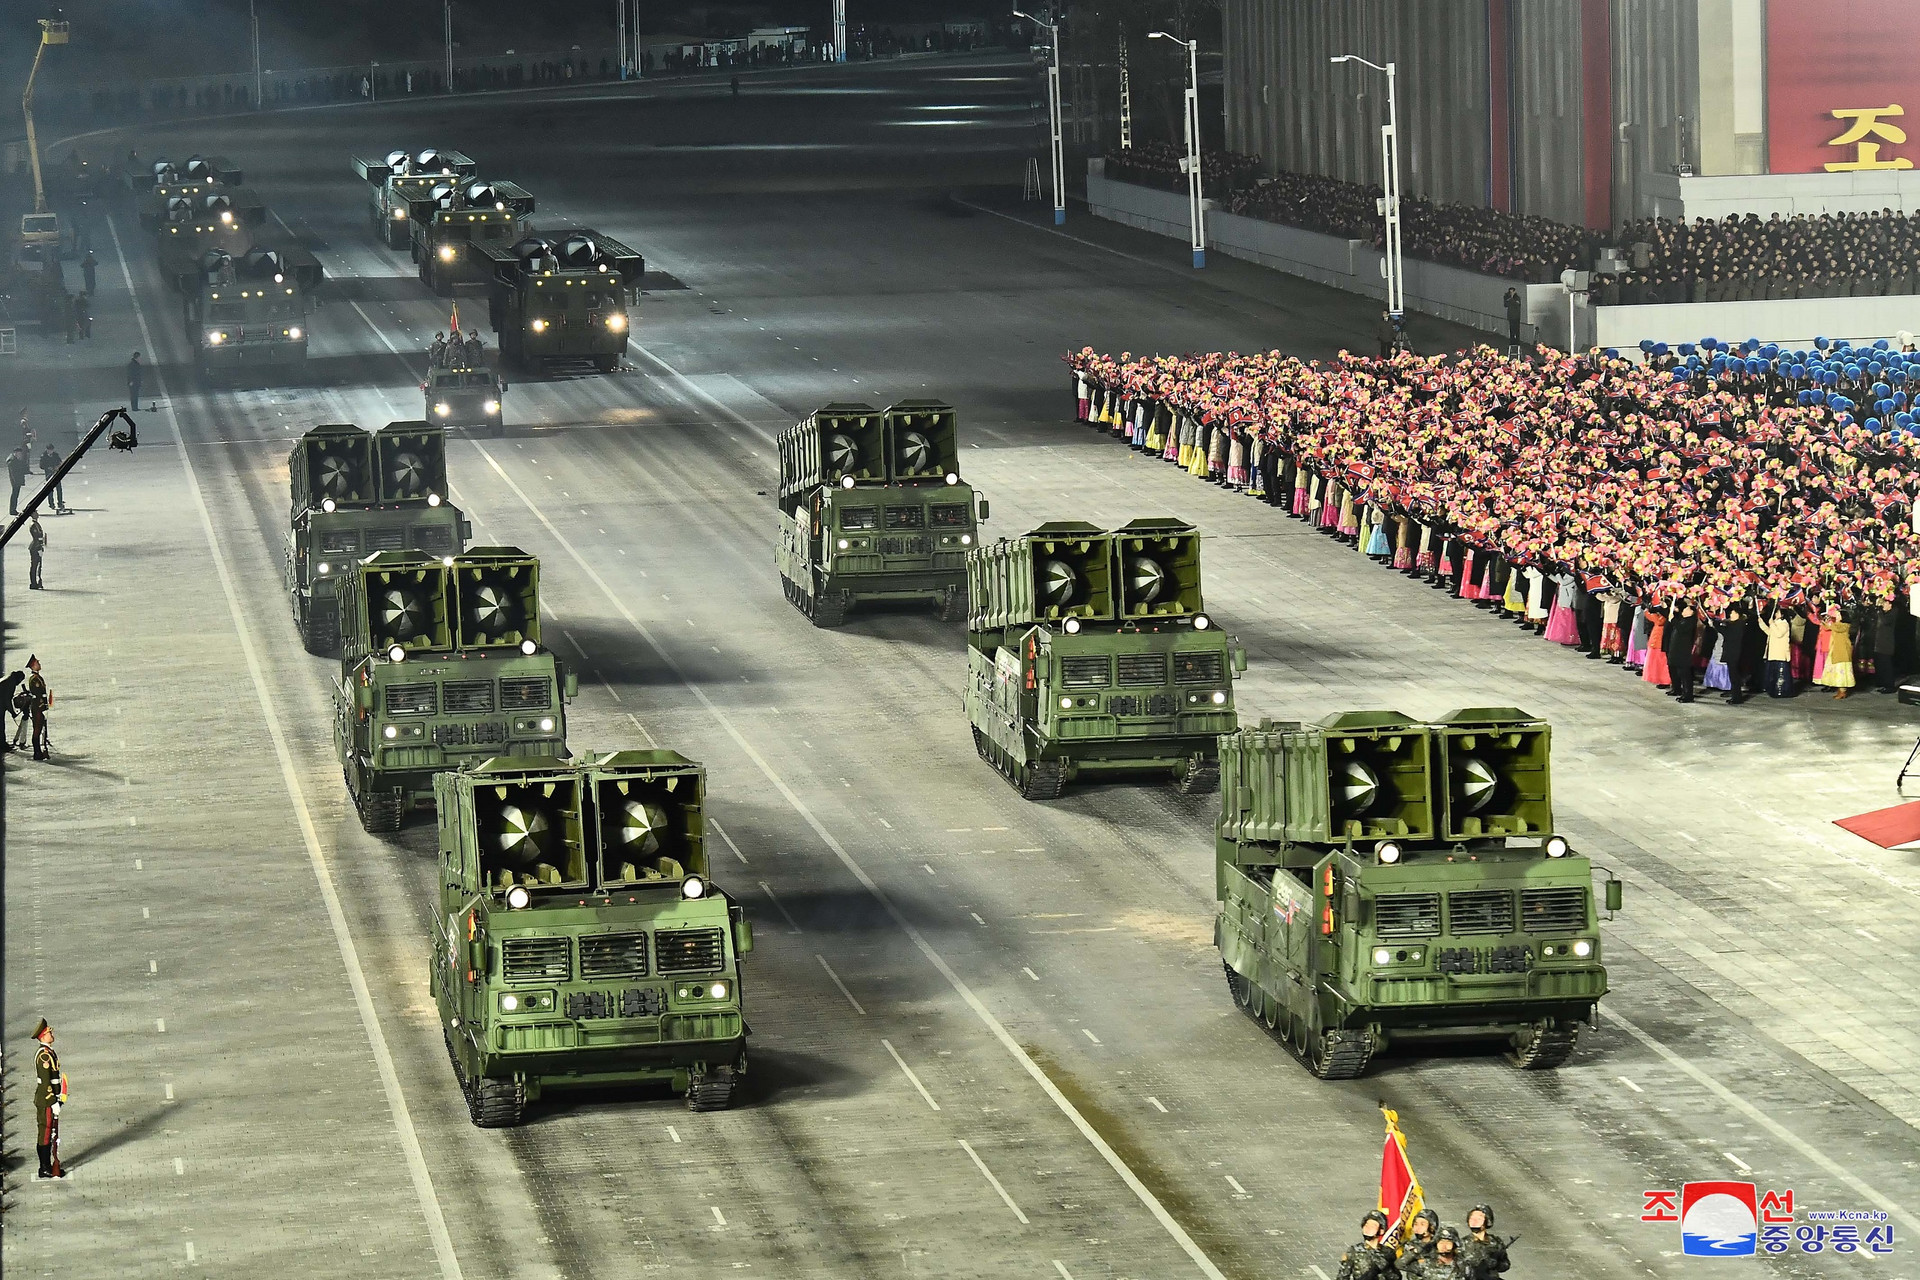 Ảnh: Dàn khí tài hoành tráng trong lễ duyệt binh Triều Tiên kỷ niệm đại hội đảng - 4